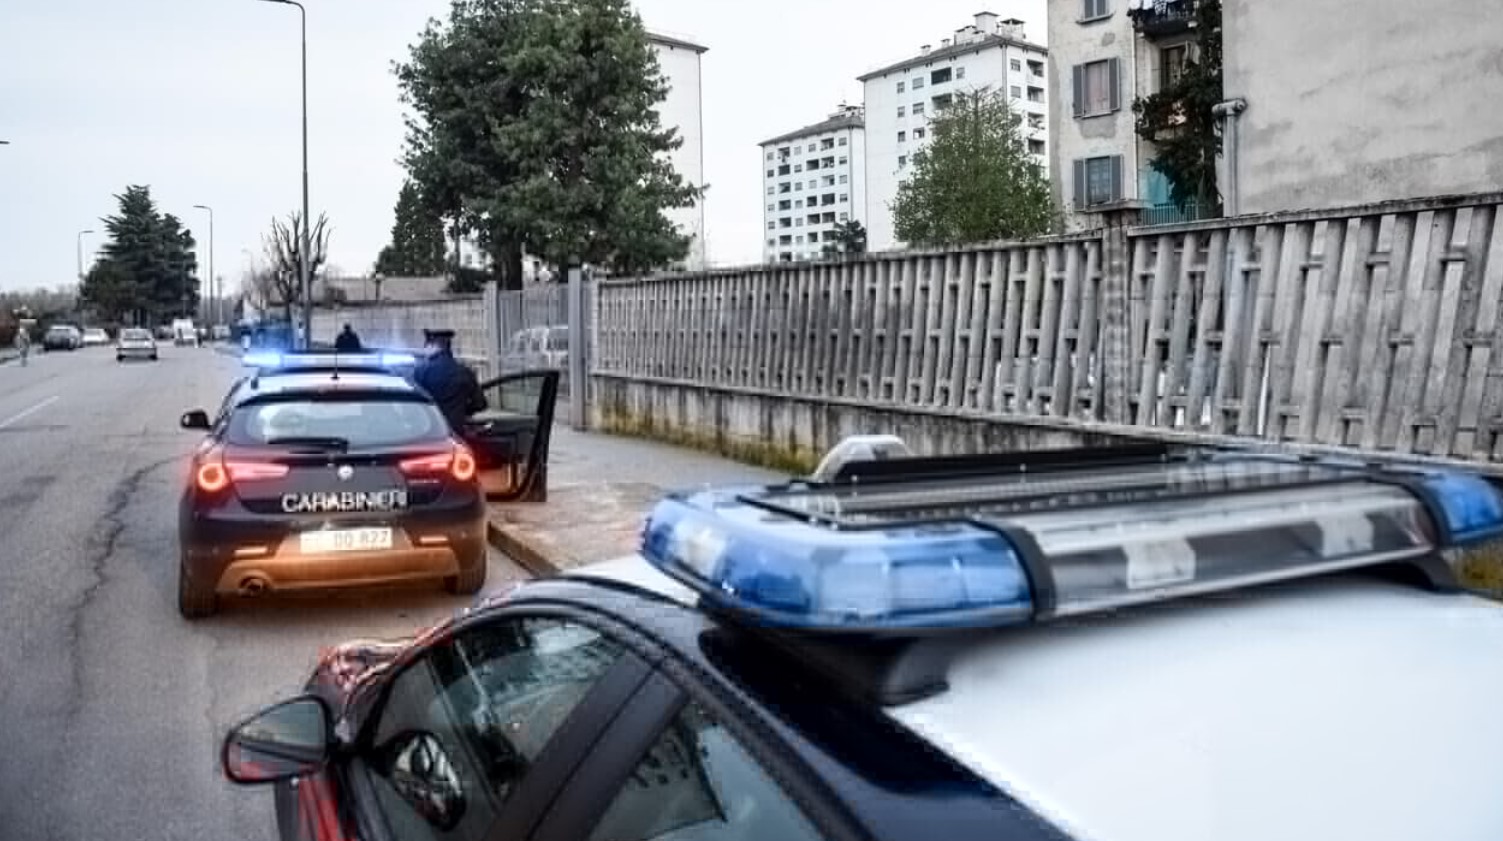 Violenta aggressione a Breno: arrestato uomo di 38 anni per maltrattamenti familiari e tentata estorsione